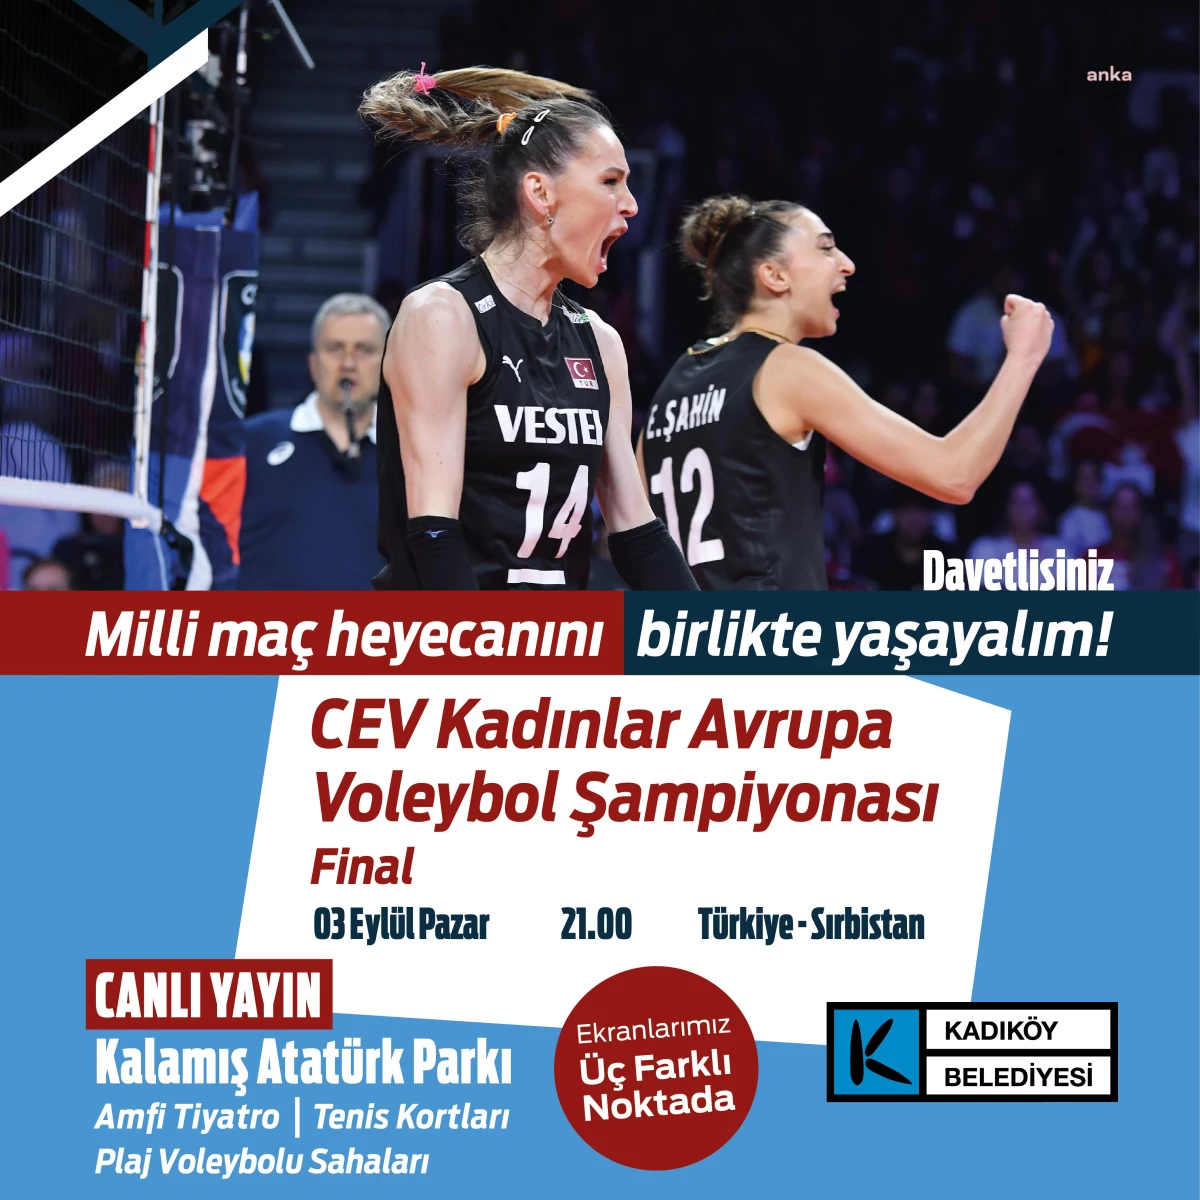 Kadıköy Belediyesi, Türkiye A Milli Voleybol Takımı\'nın final maçını üç dev ekranda yayınlayacak